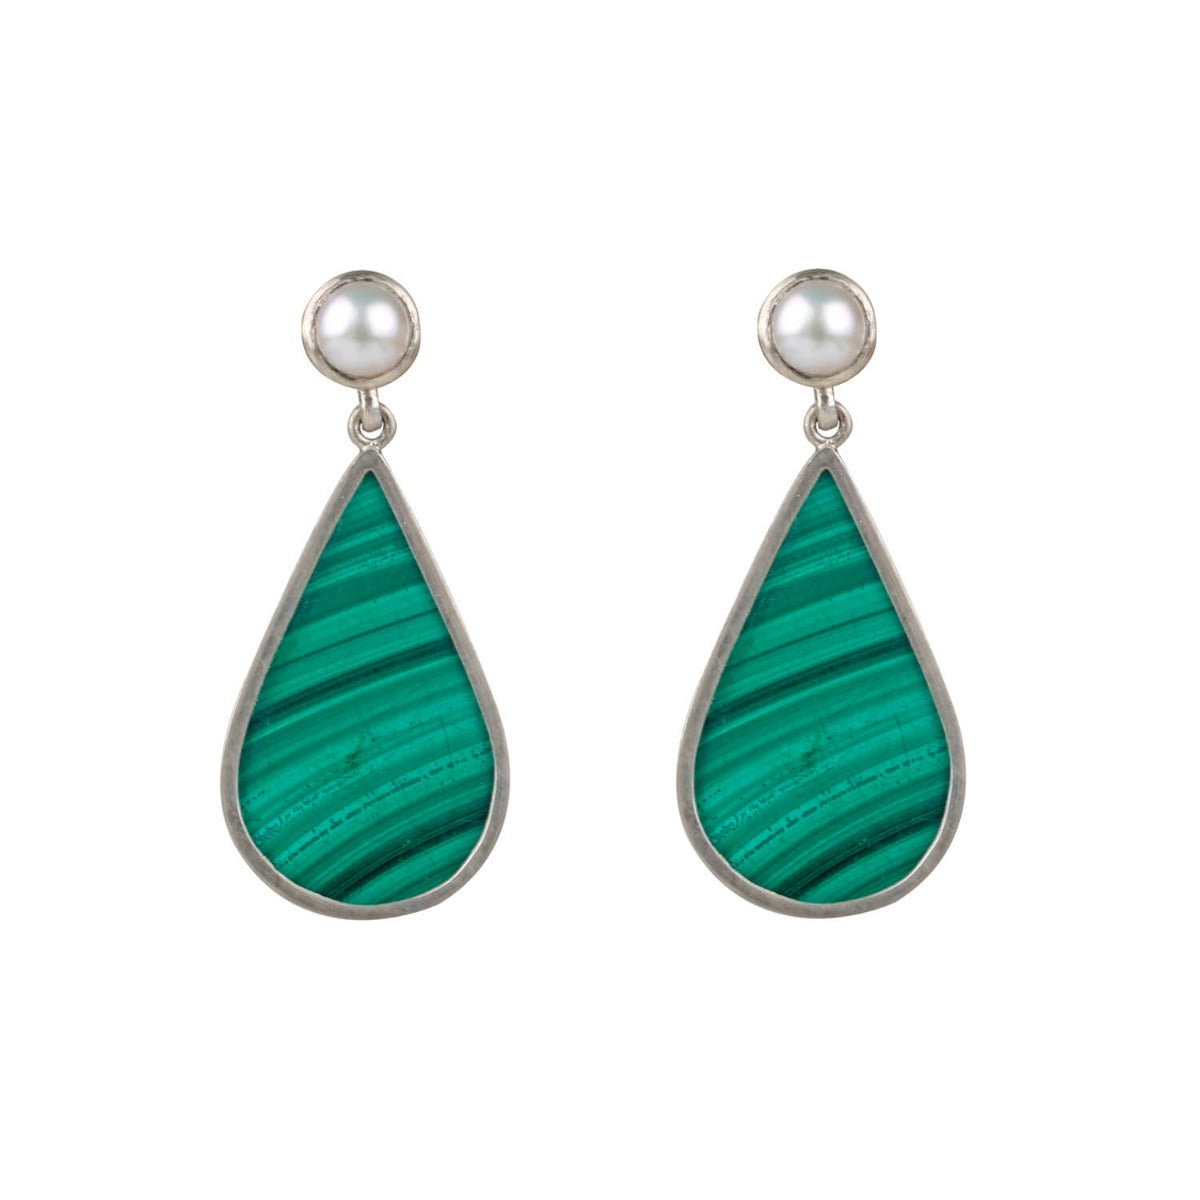 Erratic pearl and malachite earrings